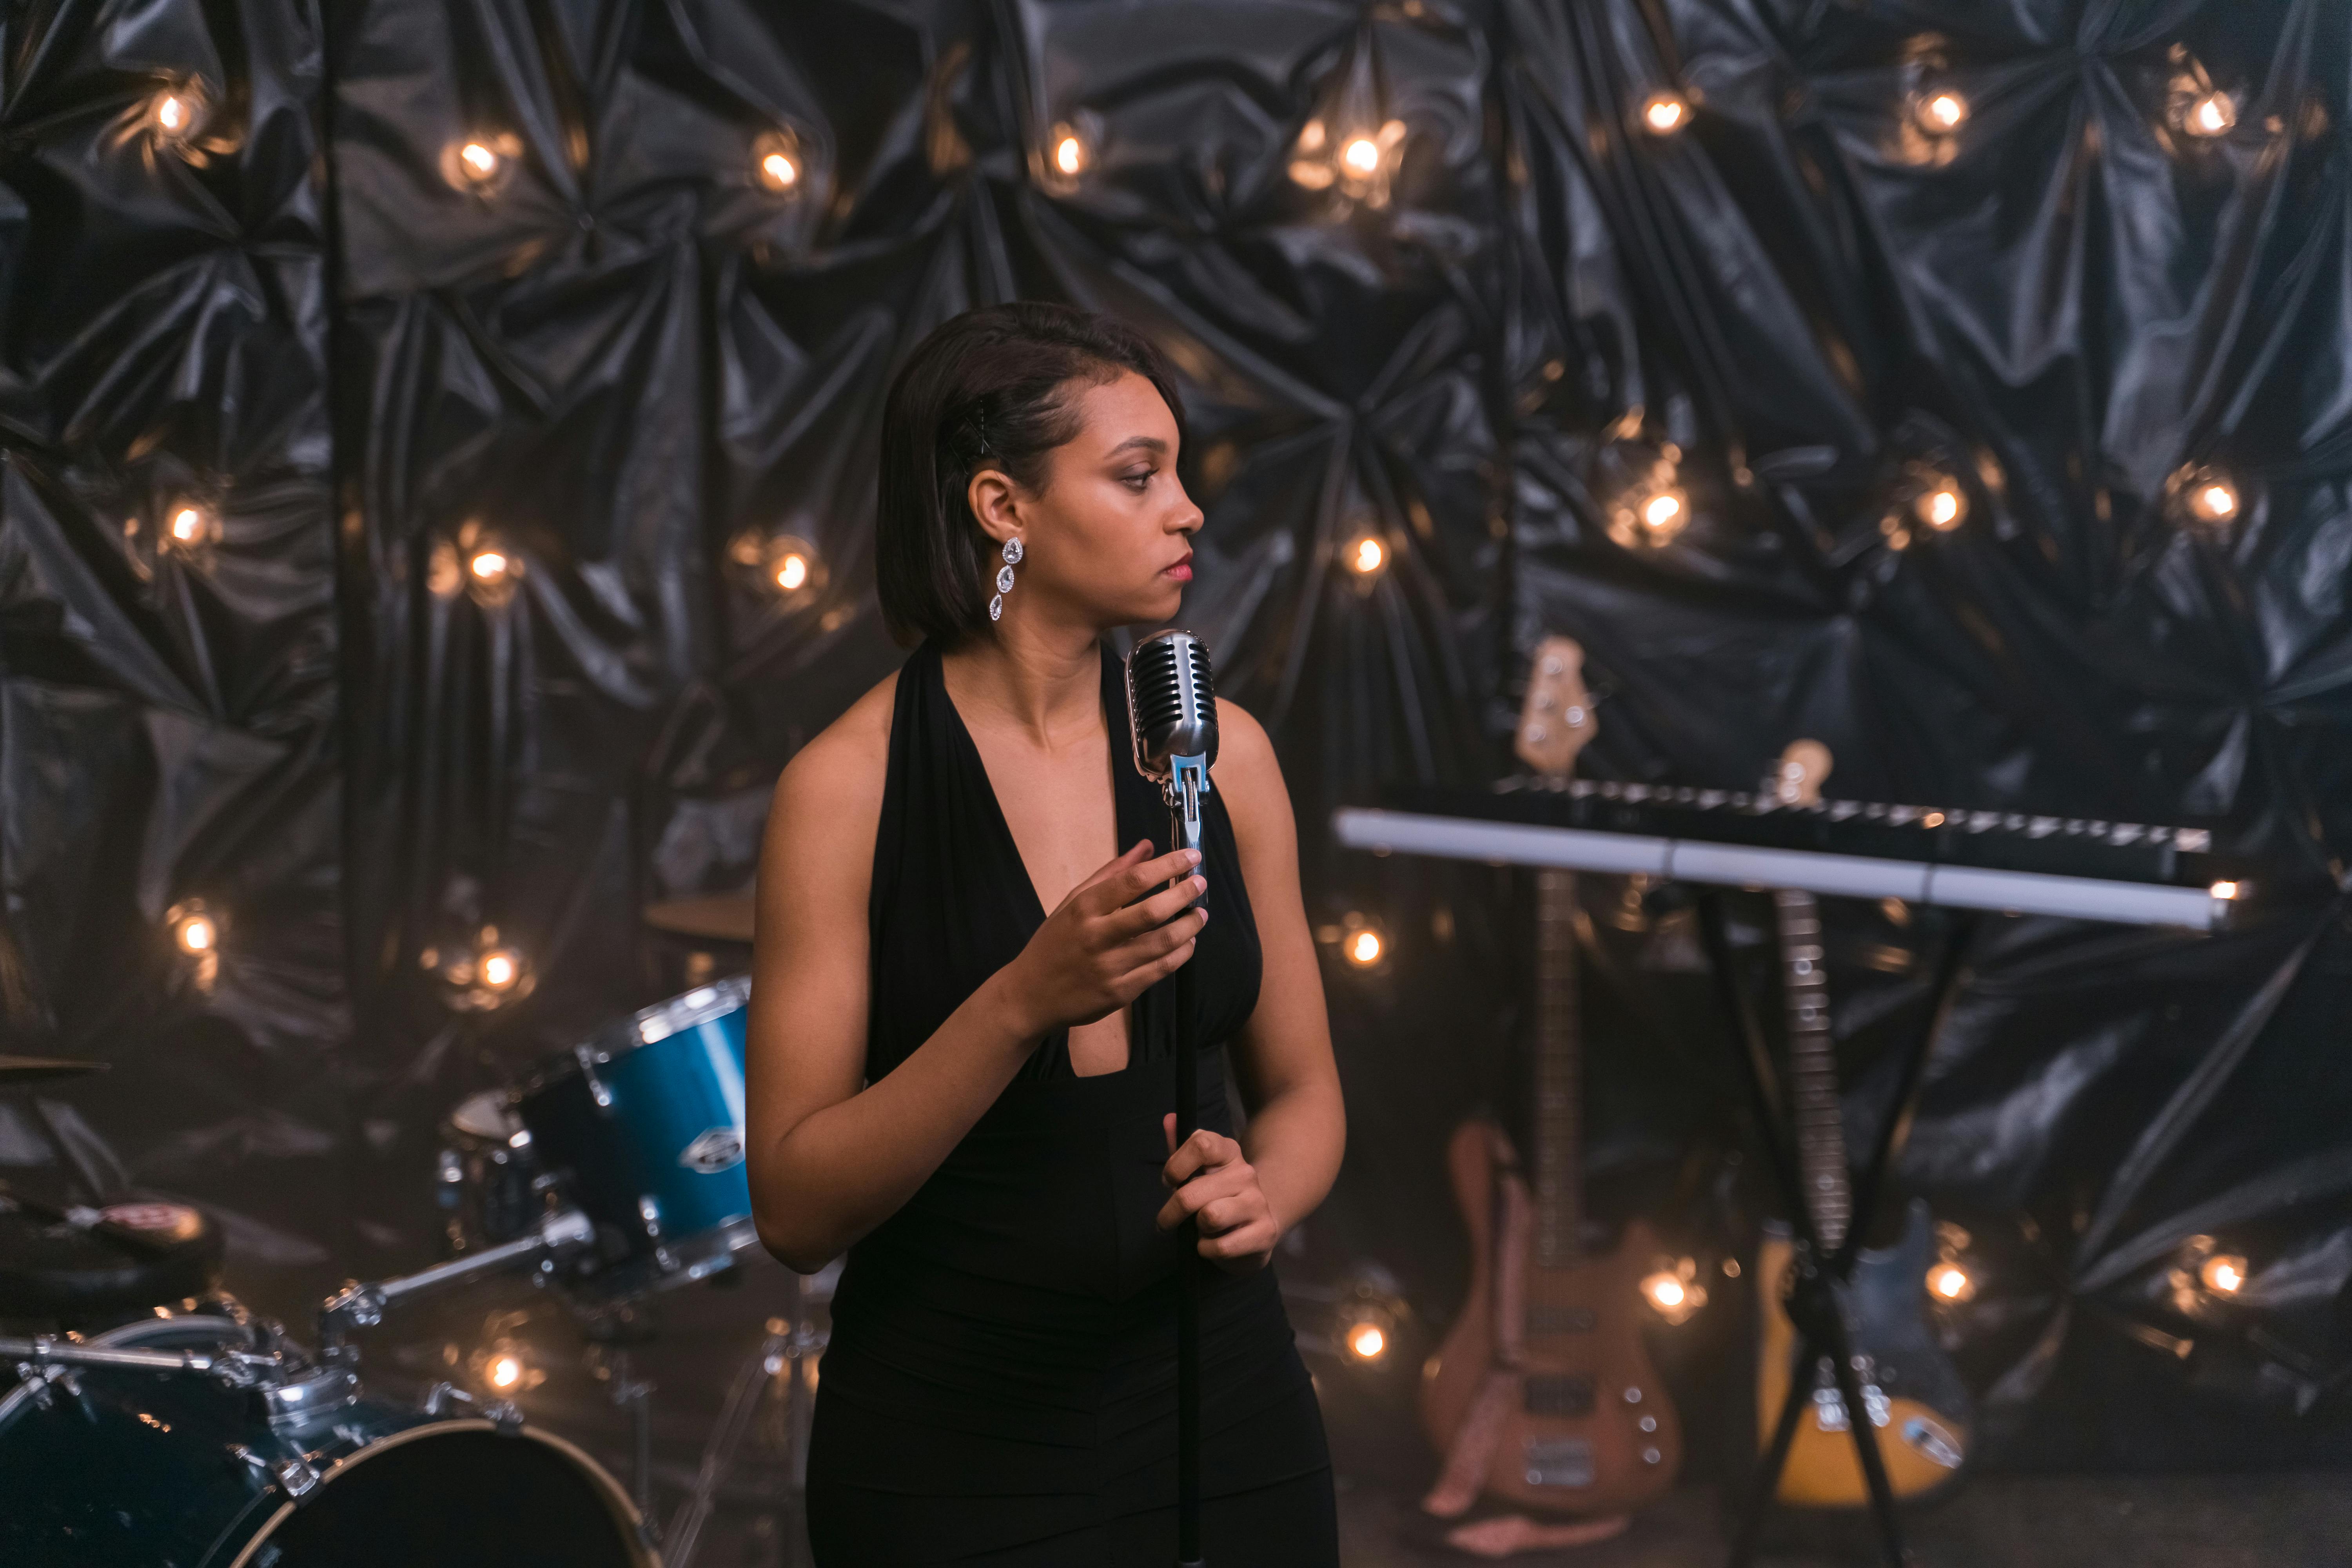 Una mujer hablando por un micrófono en el escenario | Fuente: Pexels